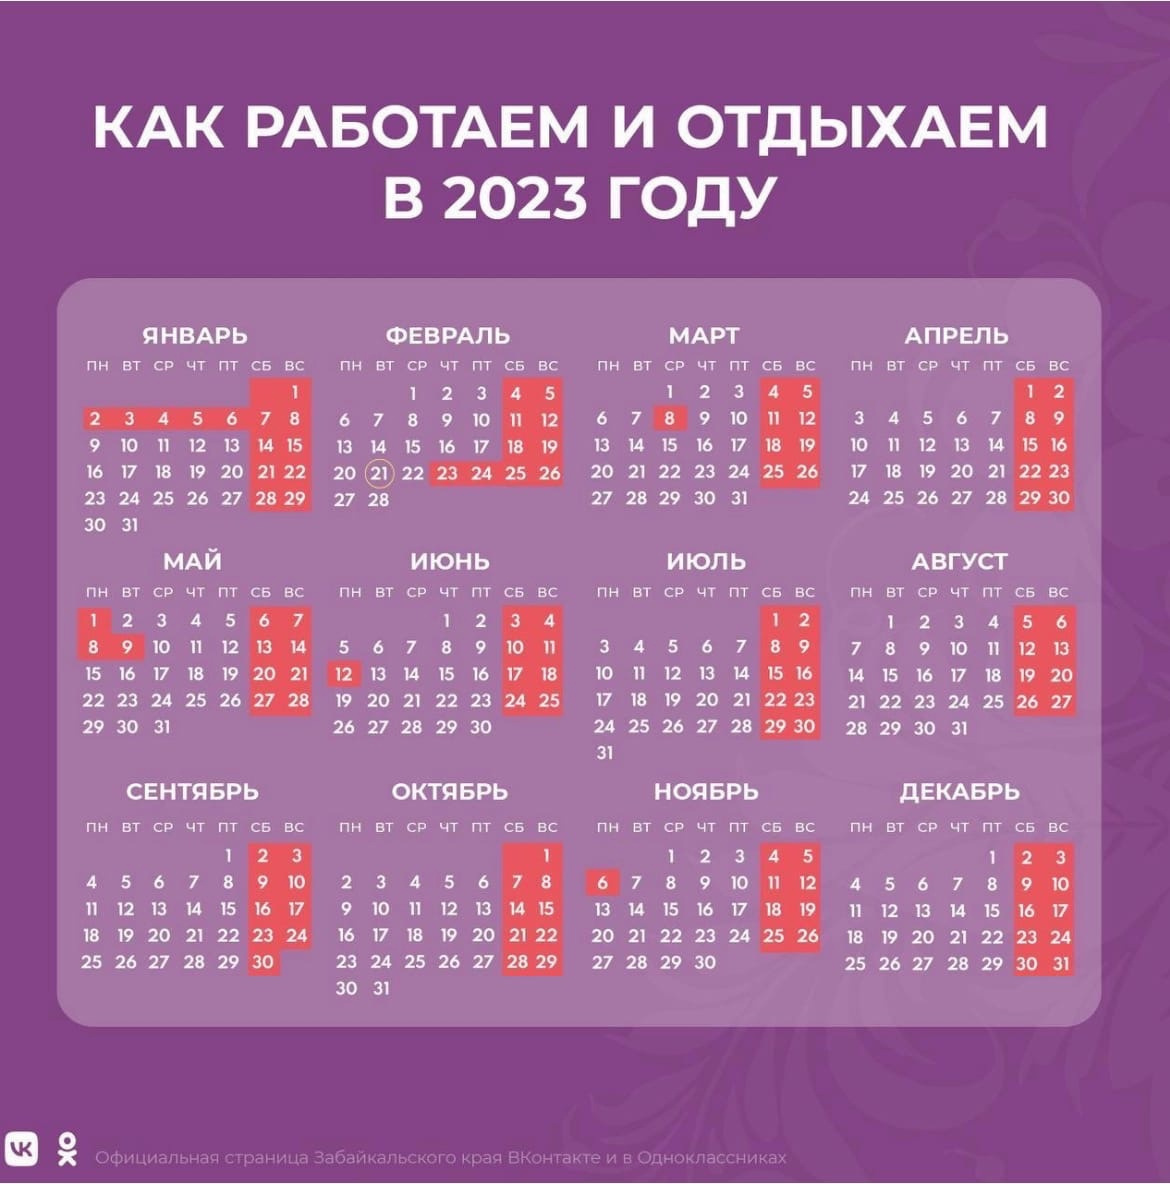 Выходные нерабочие в 2023. Календарь праздников. Рабочие дни в феврале. Выходные в феврале. Отдыхаем в феврале 2023.